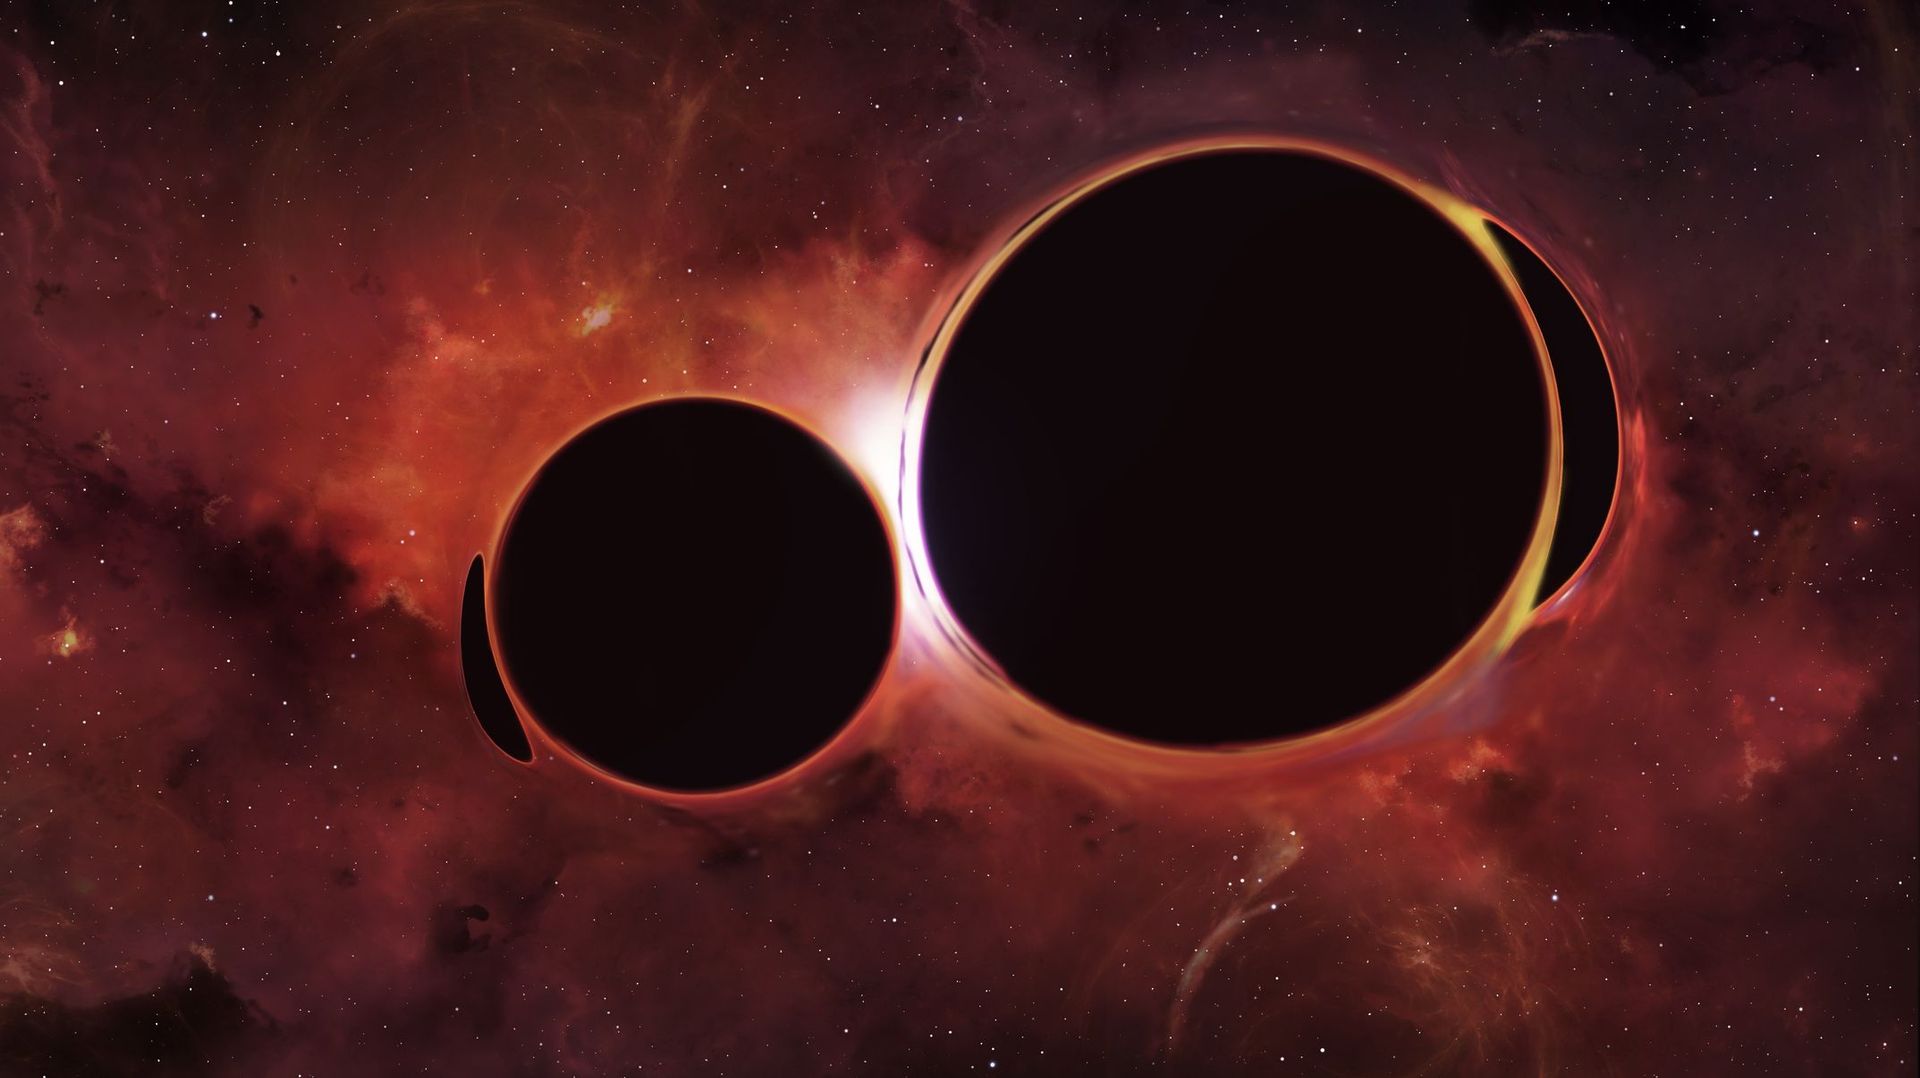 Un trou noir supermassif se promène dans l'espace et on ne comprend pas pourquoi